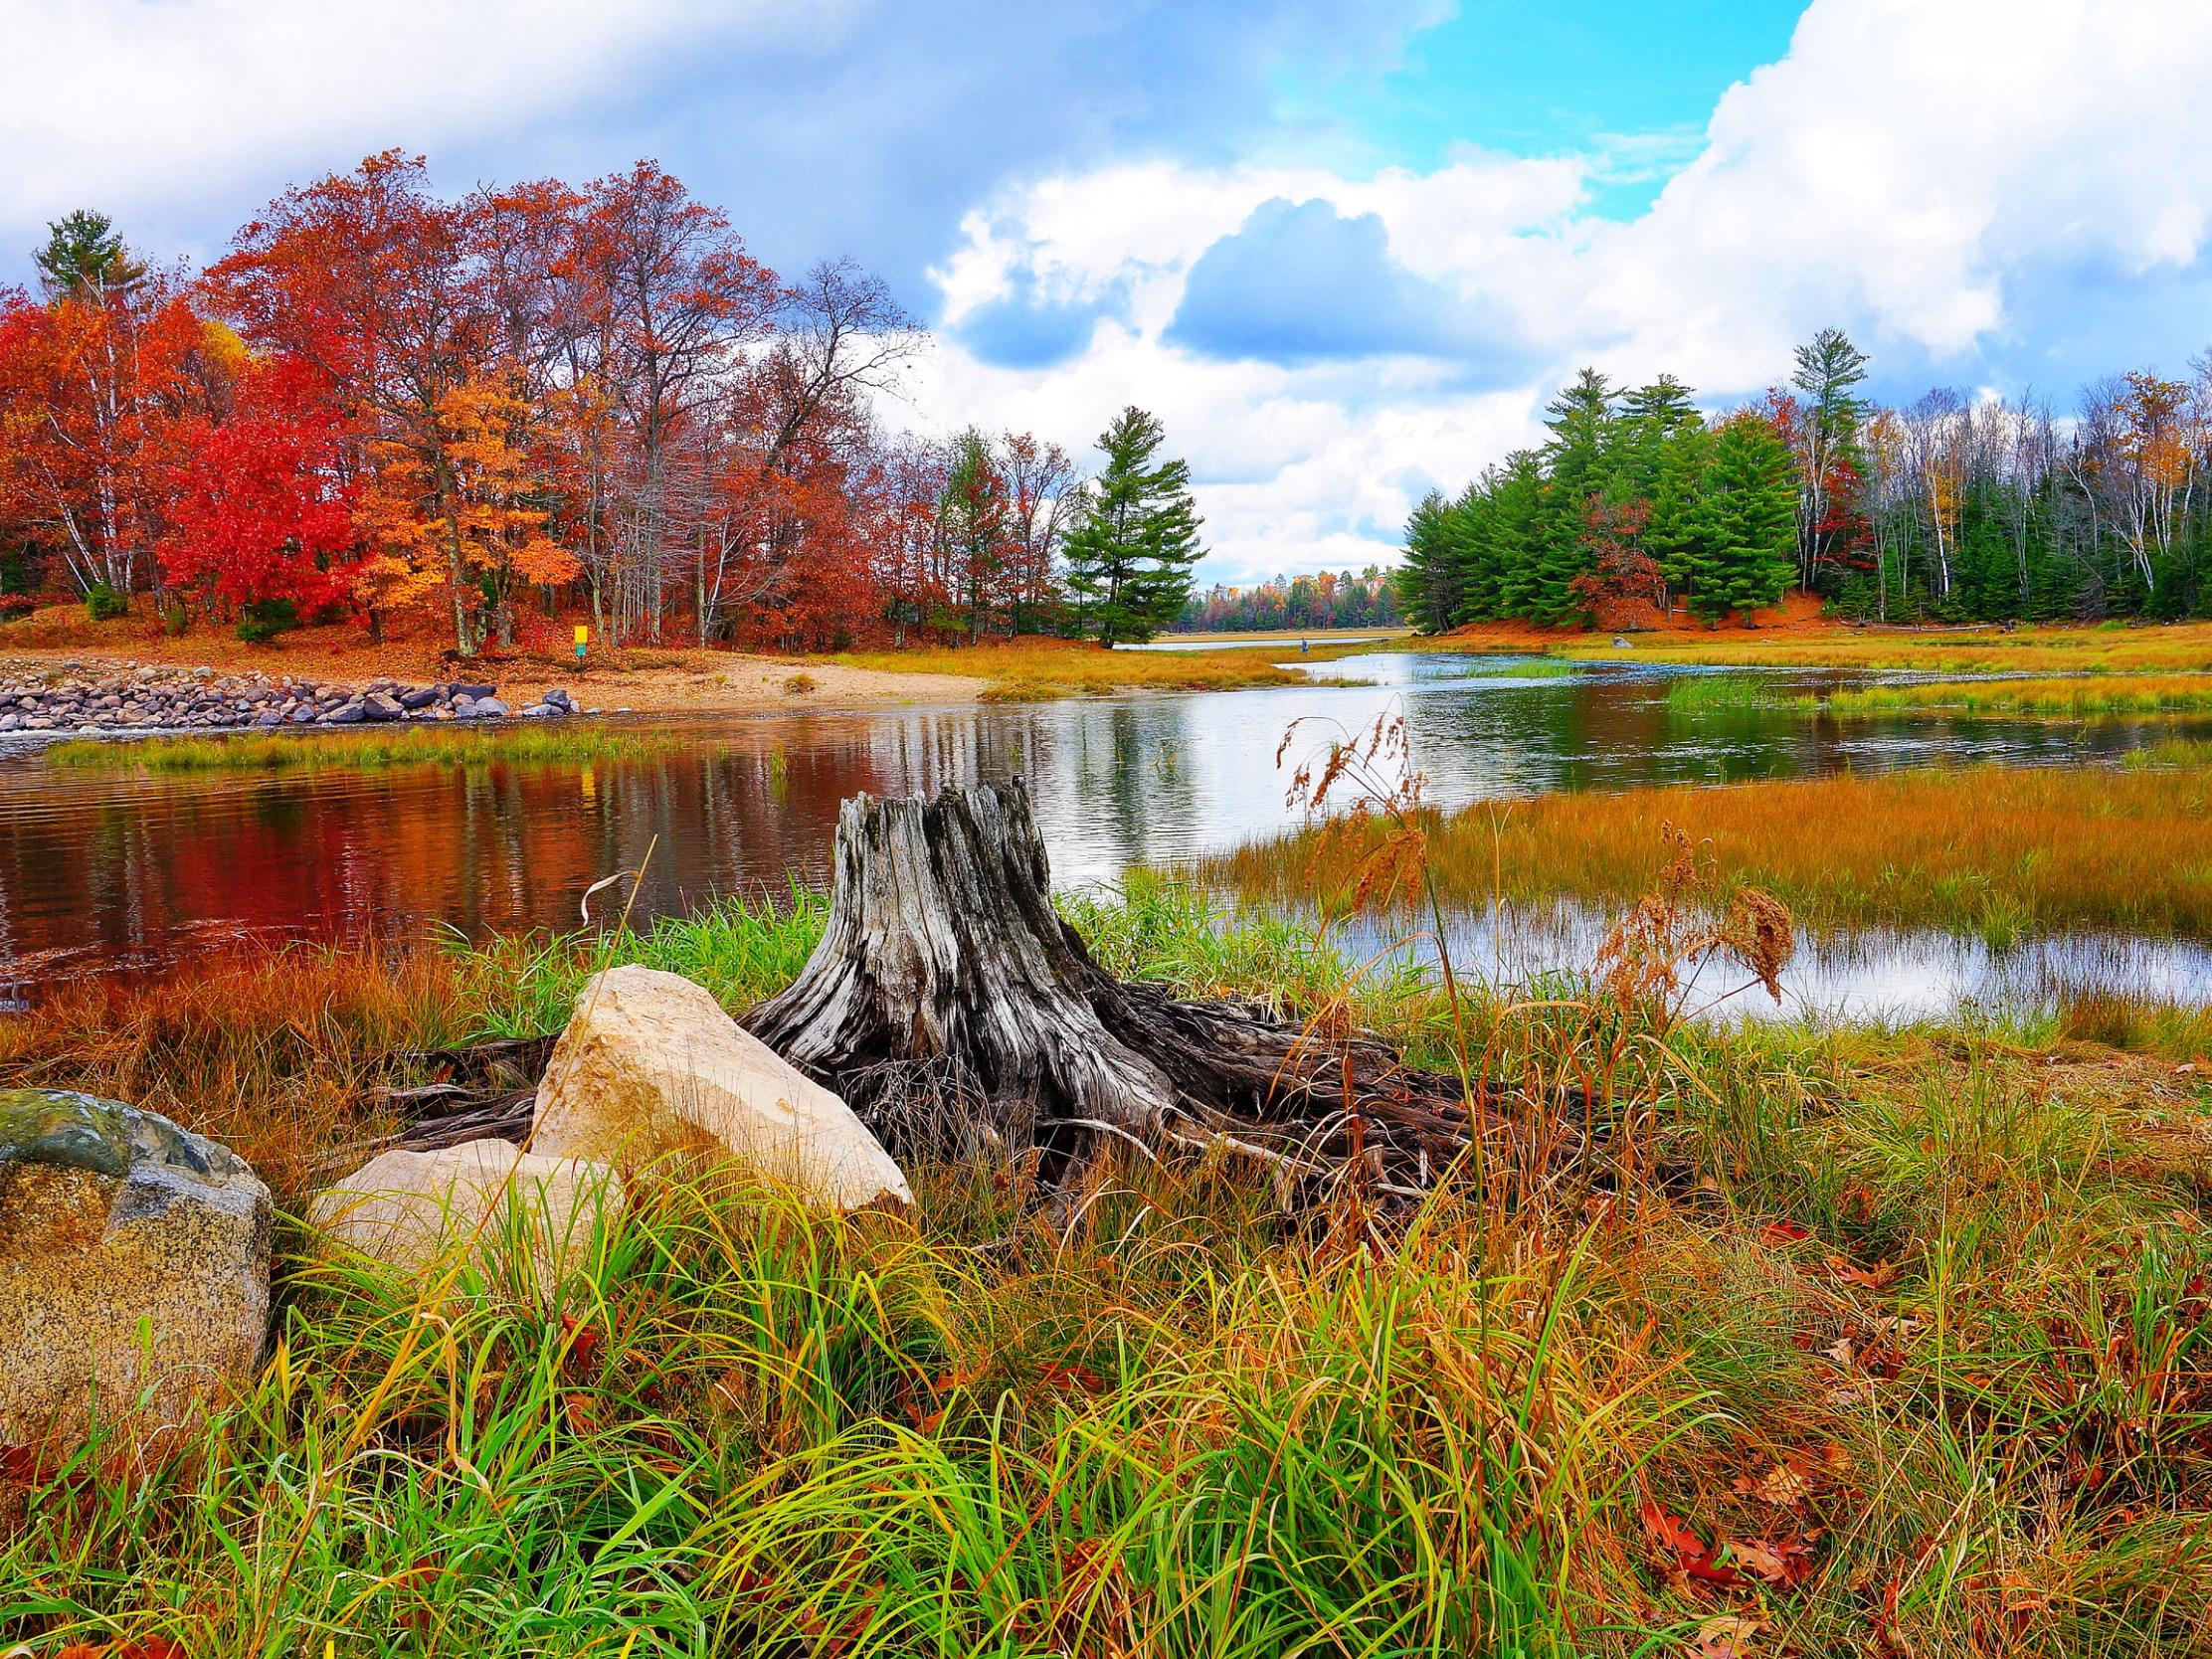 Описание фотографии природа. Пейзаж. Осень река. Природа осенью. Пейзаж осени.